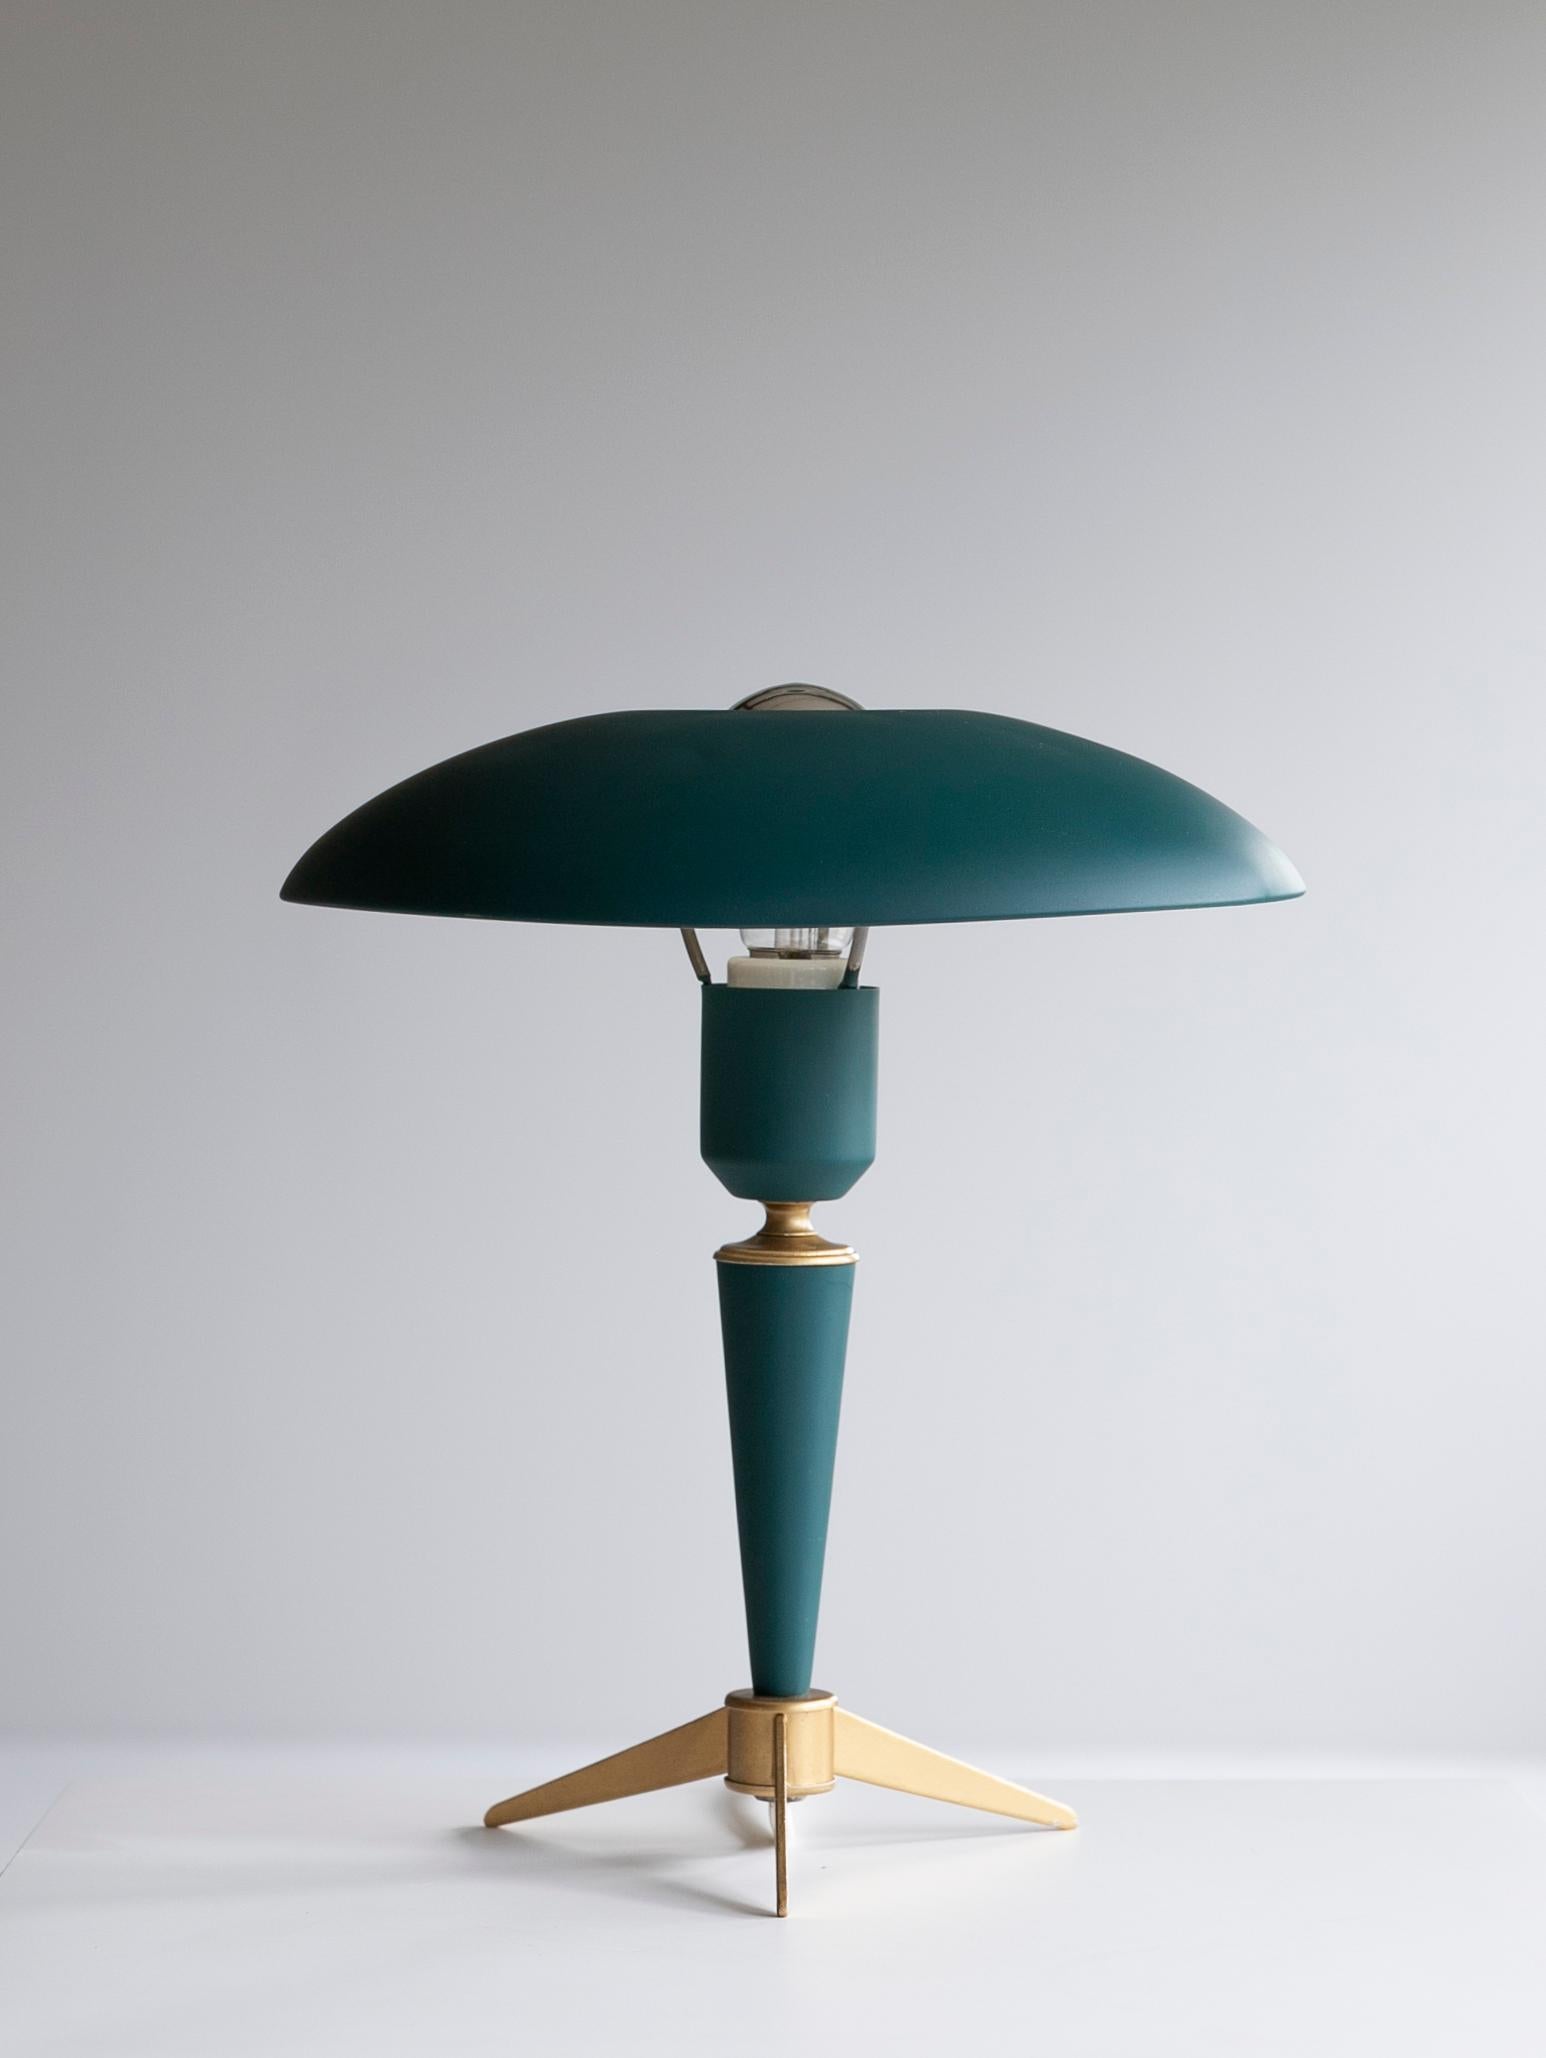 Philips l Louis Kalff lampe de bureau vintage

Lampe de bureau vintage du designer néerlandais Louis Kalff.
Il est devenu un designer exclusif pour la société néerlandaise Philips en 1925 et a créé de nombreux chefs-d'œuvre.
Il a créé de